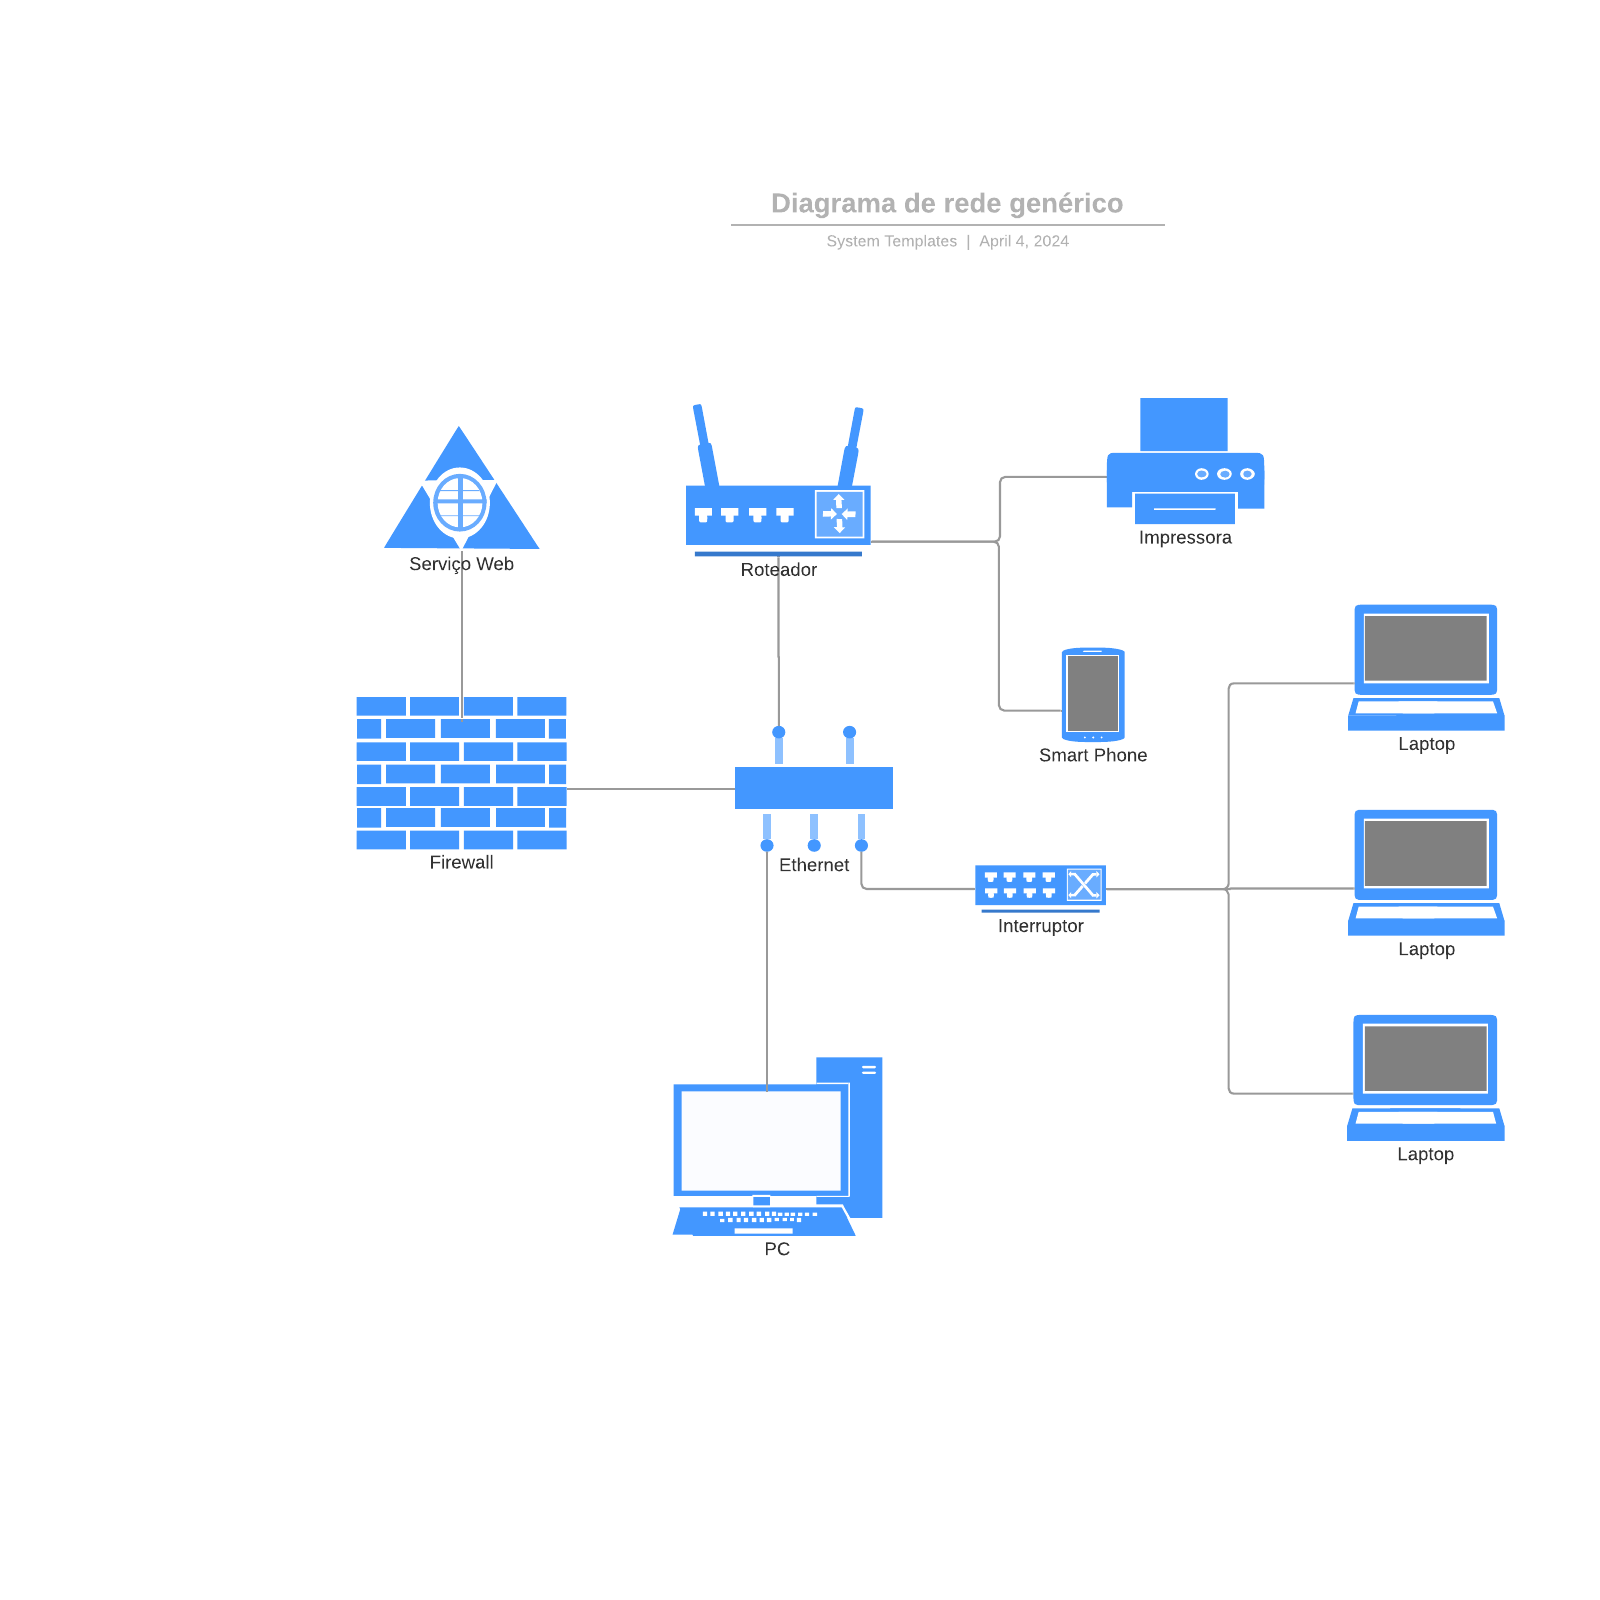 Diagrama de rede genérico example